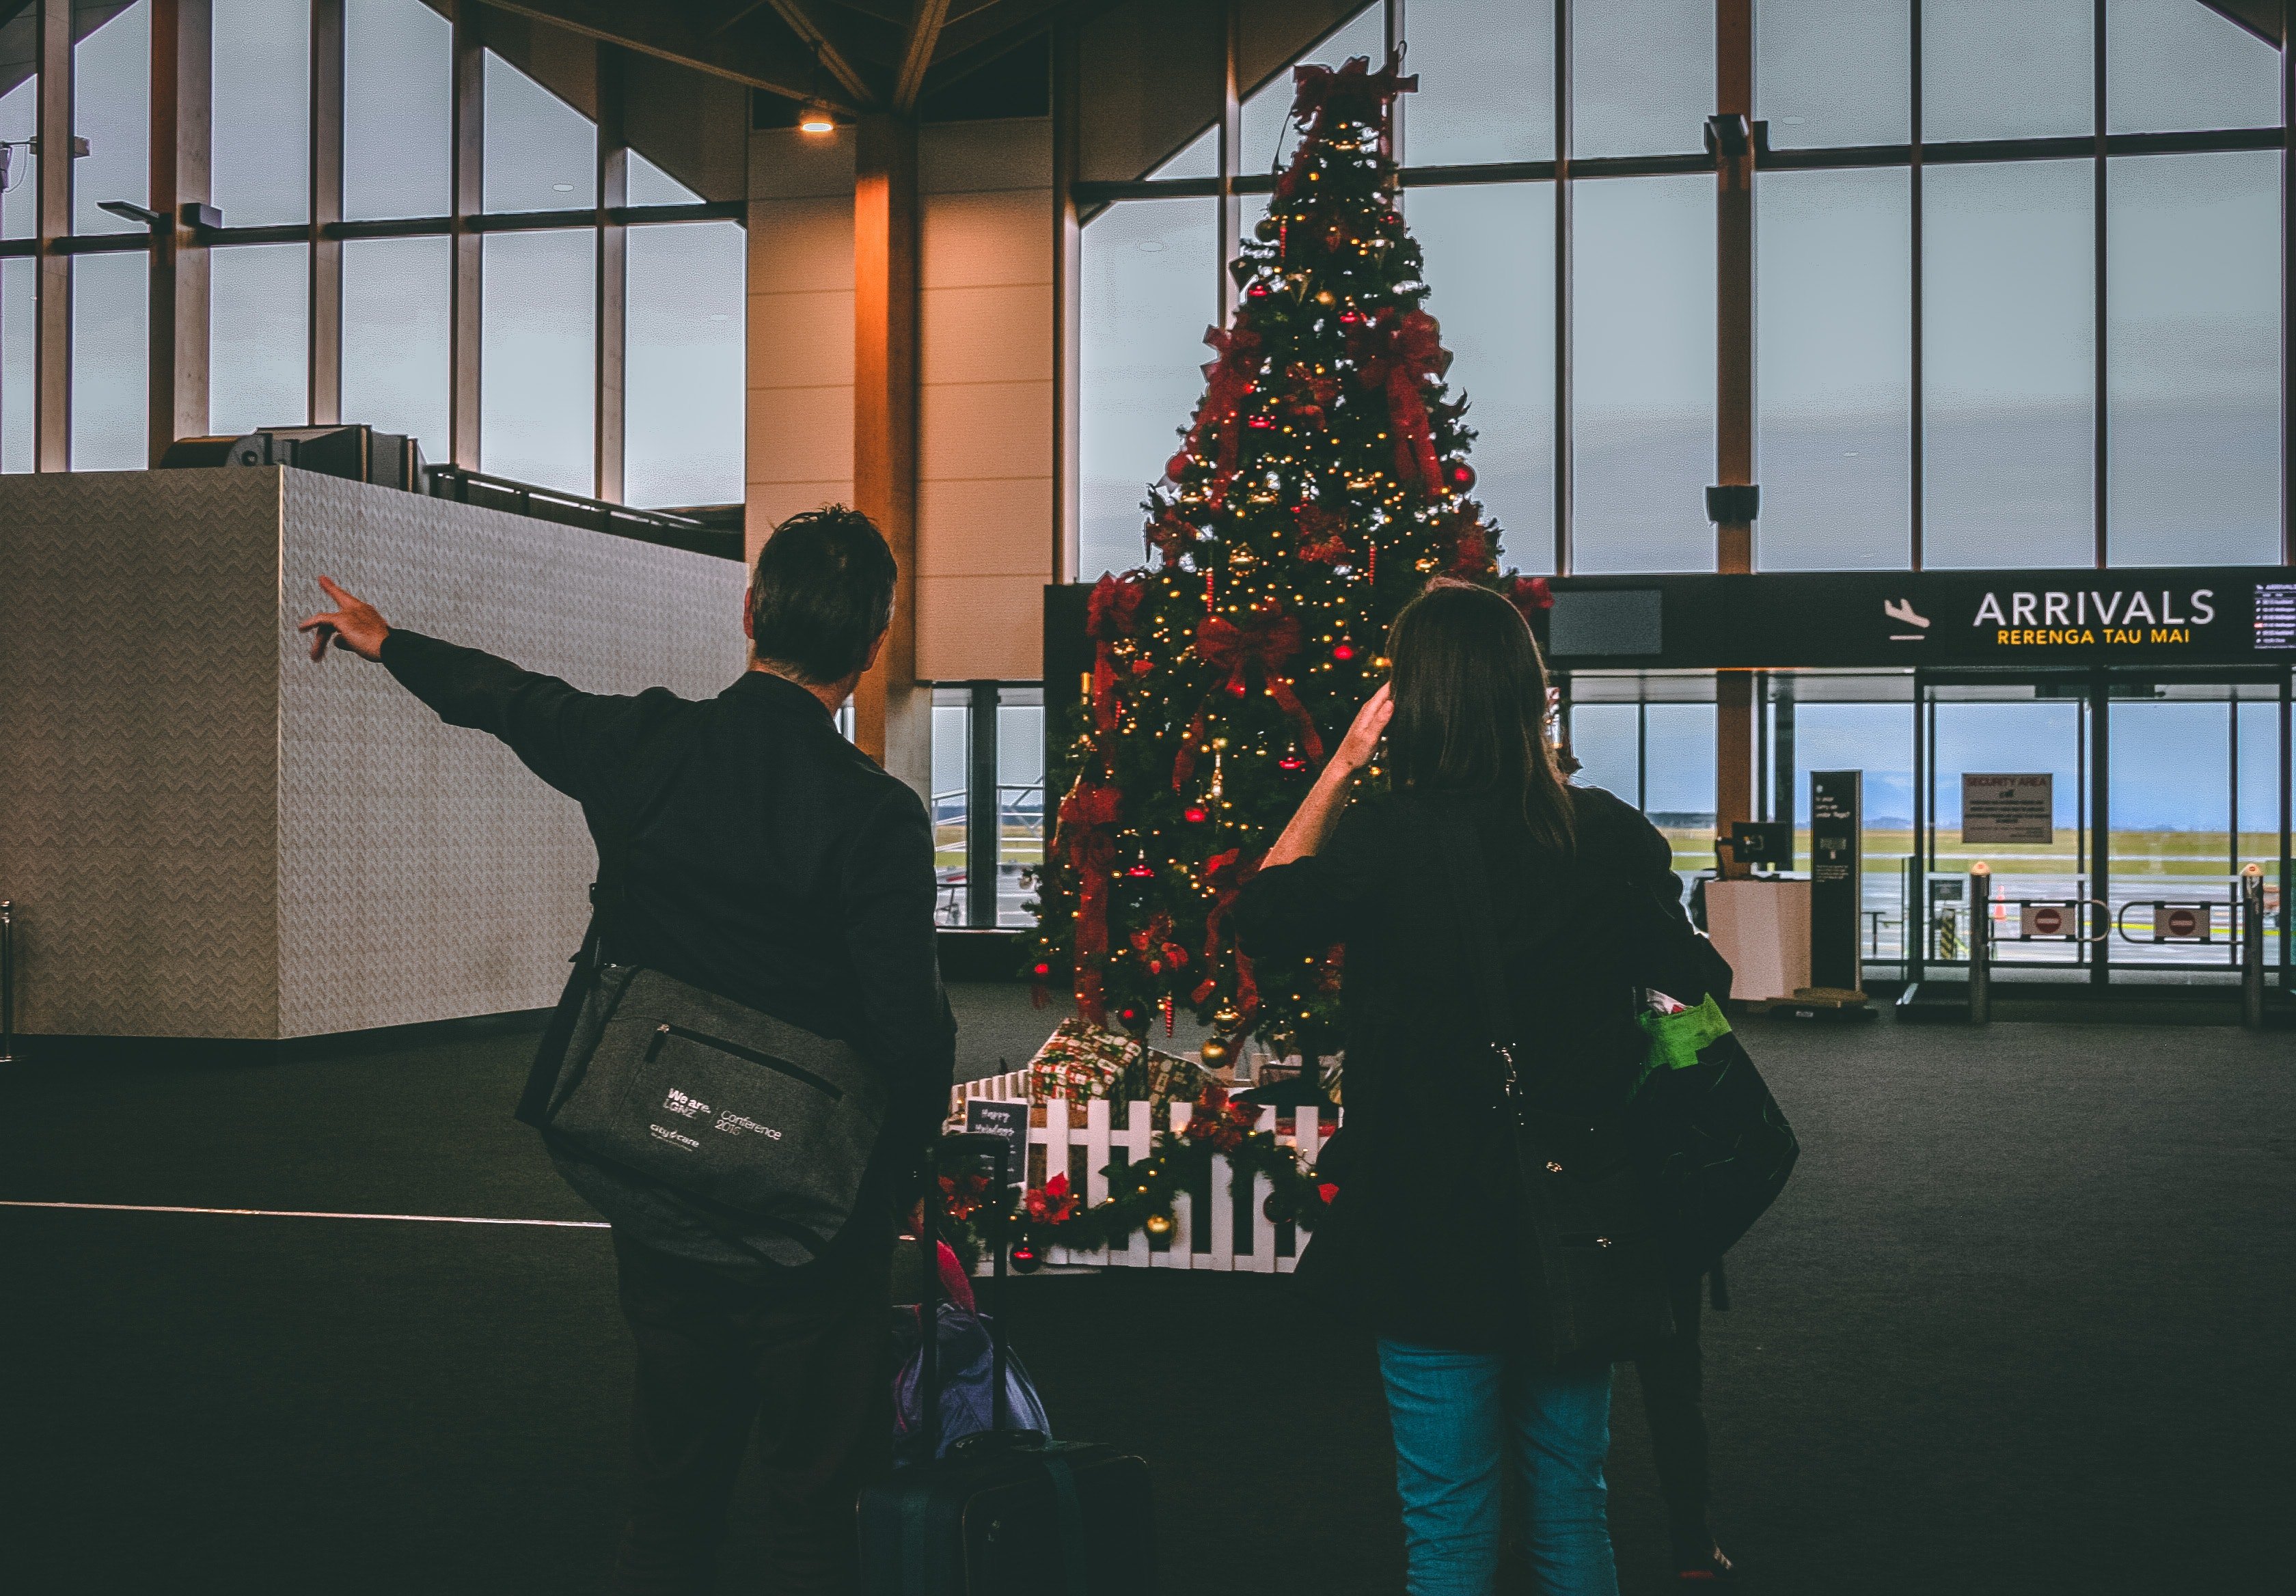 Una pareja camina por el aeropuerto un día de Navidad. | Foto: Pexels